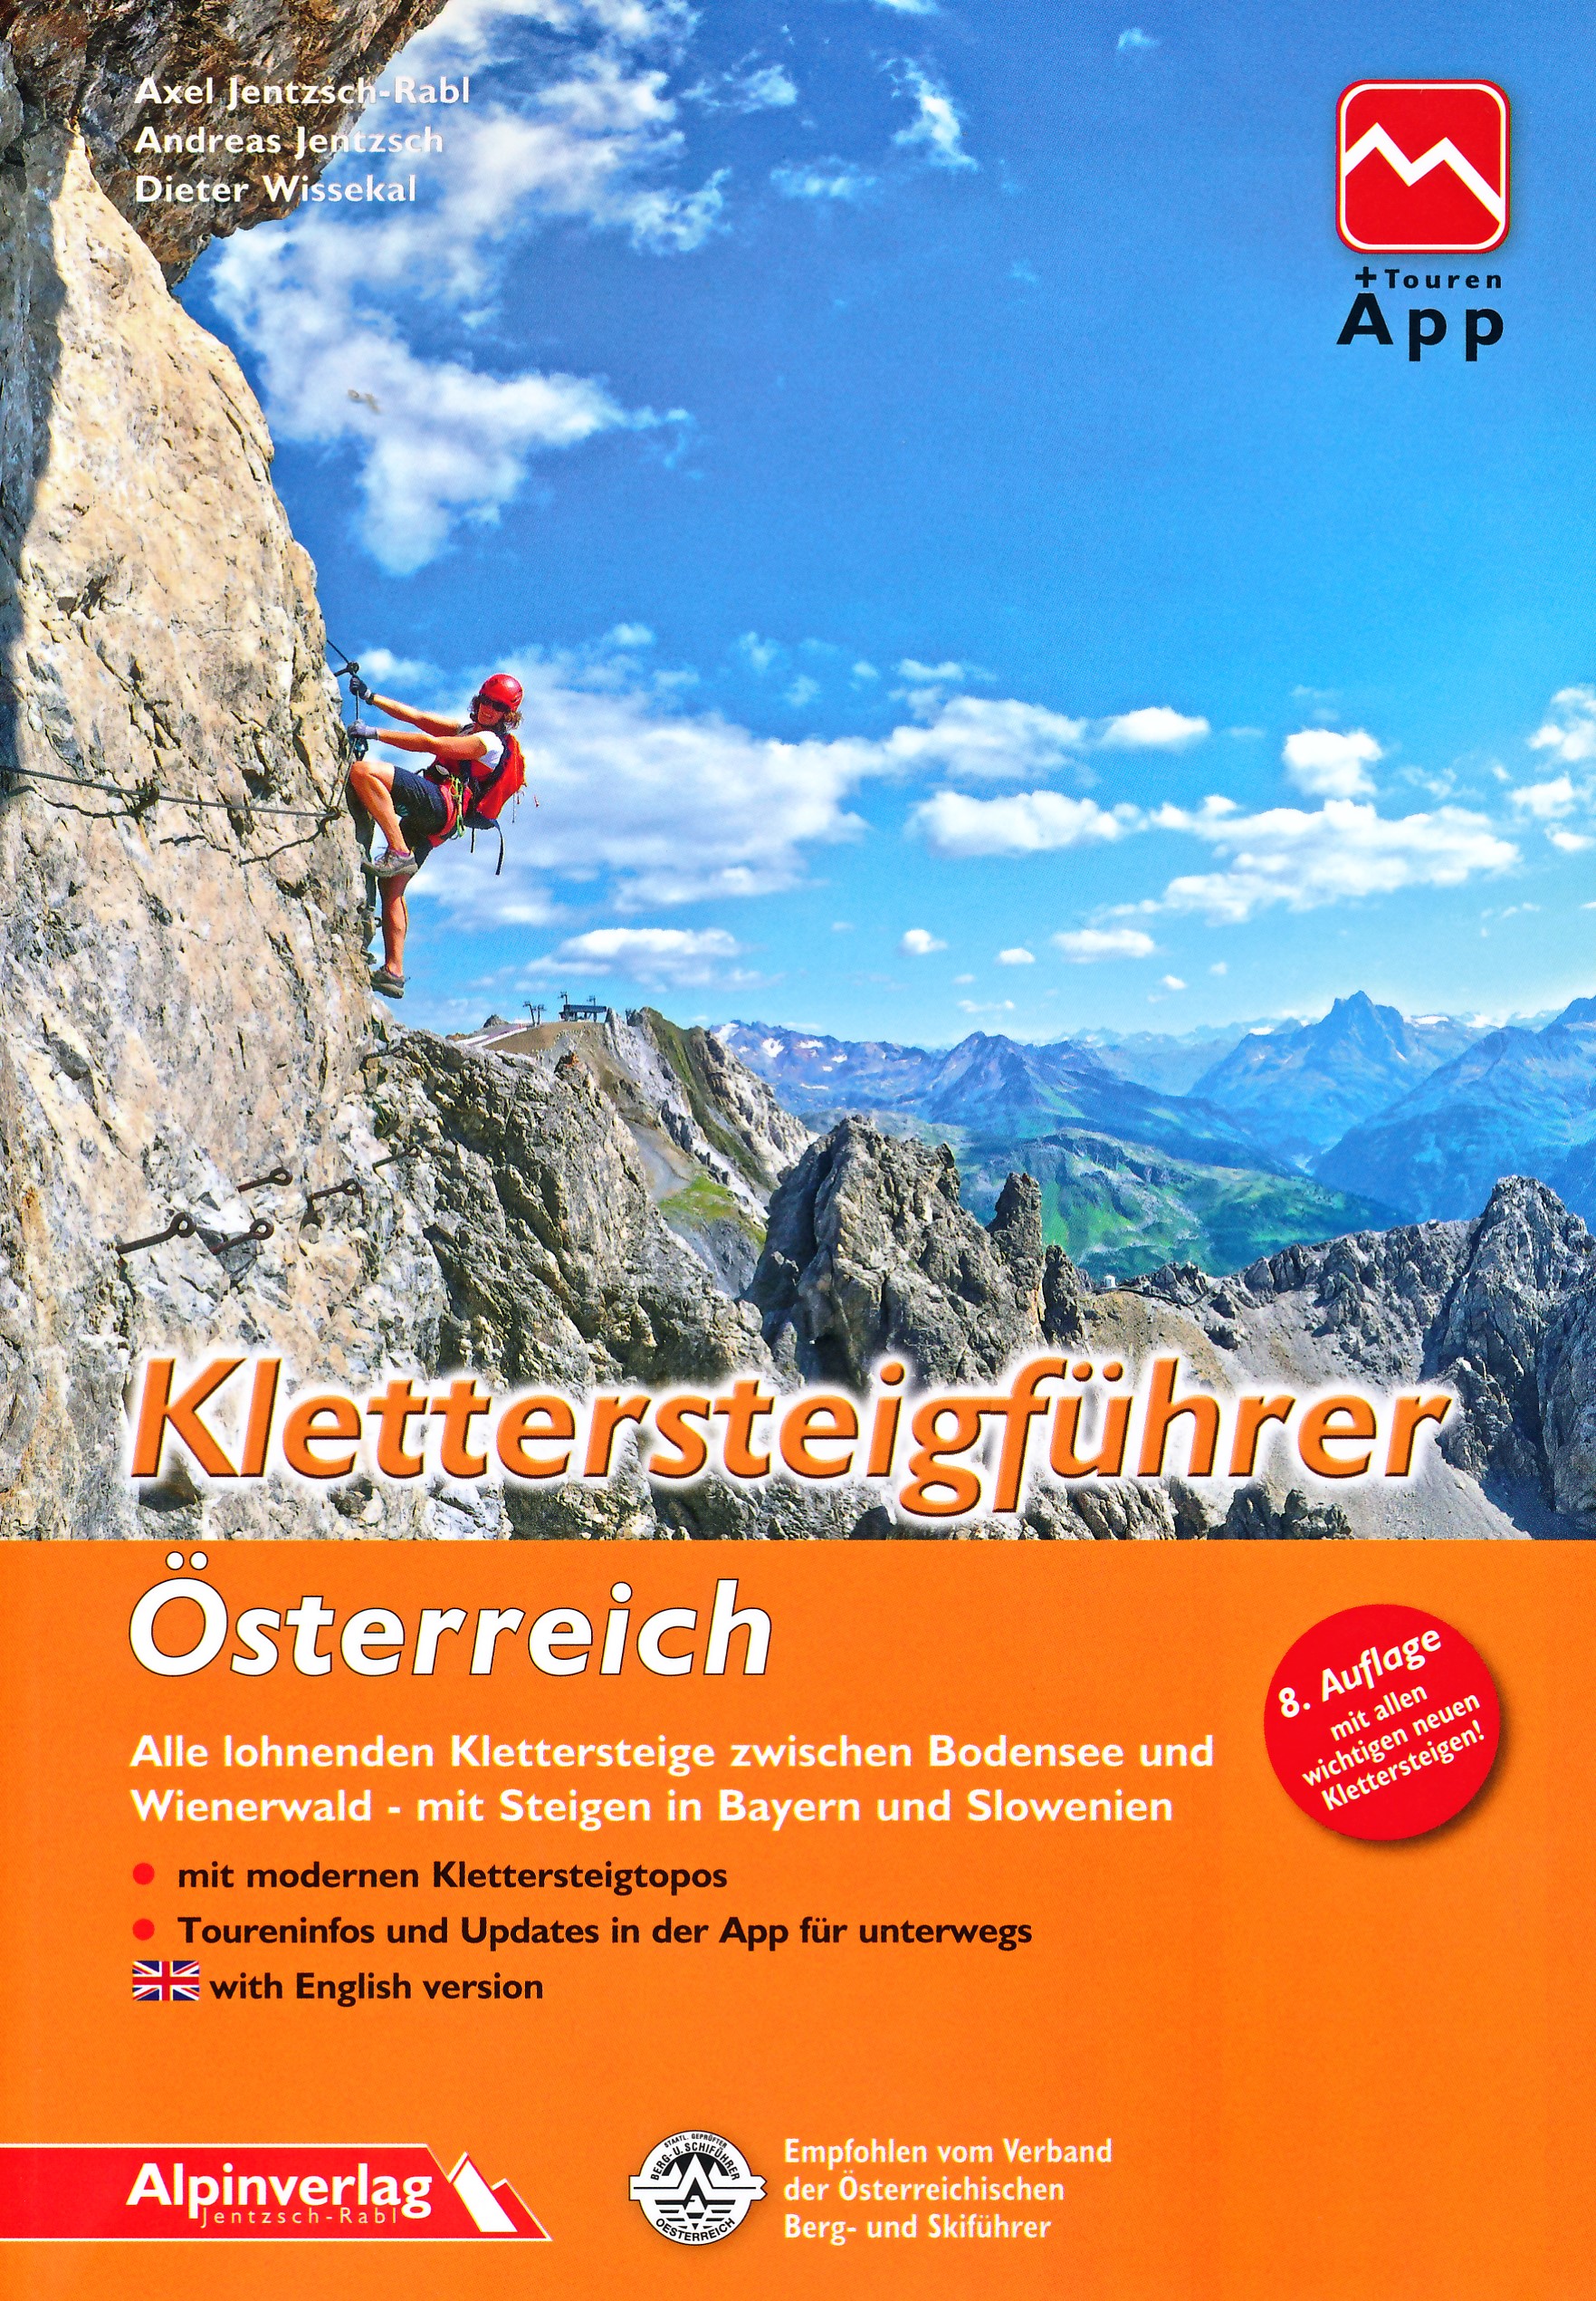 Online bestellen: Klimgids - Klettersteiggids Klettersteigführer Österreich - Oostenrijk | Alpinverlag